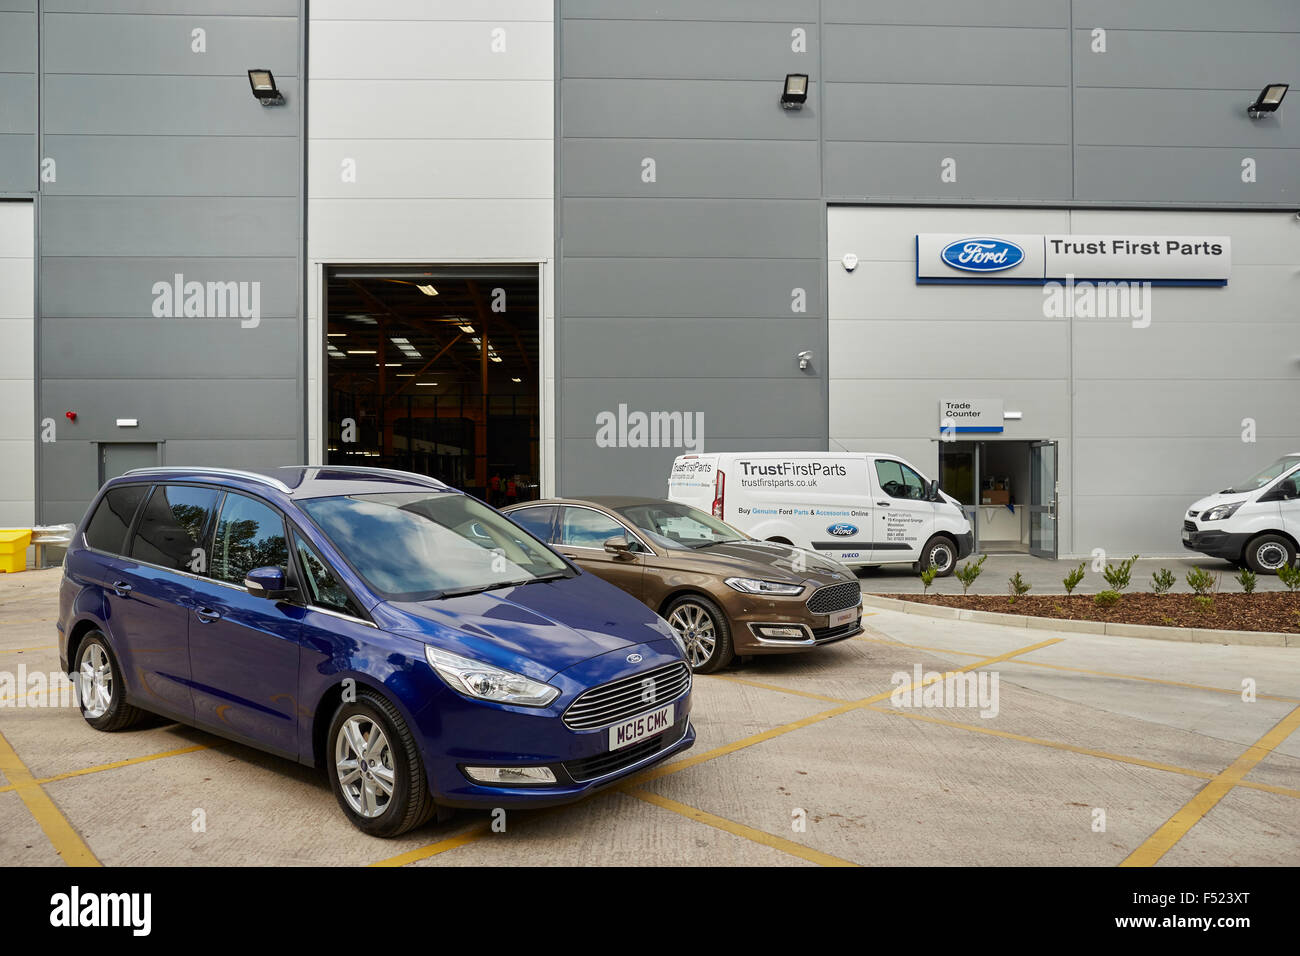 La fiducia delle parti di Ford aprire il loro nuovo centro di distribuzione a Warrington Cheshire foto esterno del sito di proprietà di architetto Foto Stock